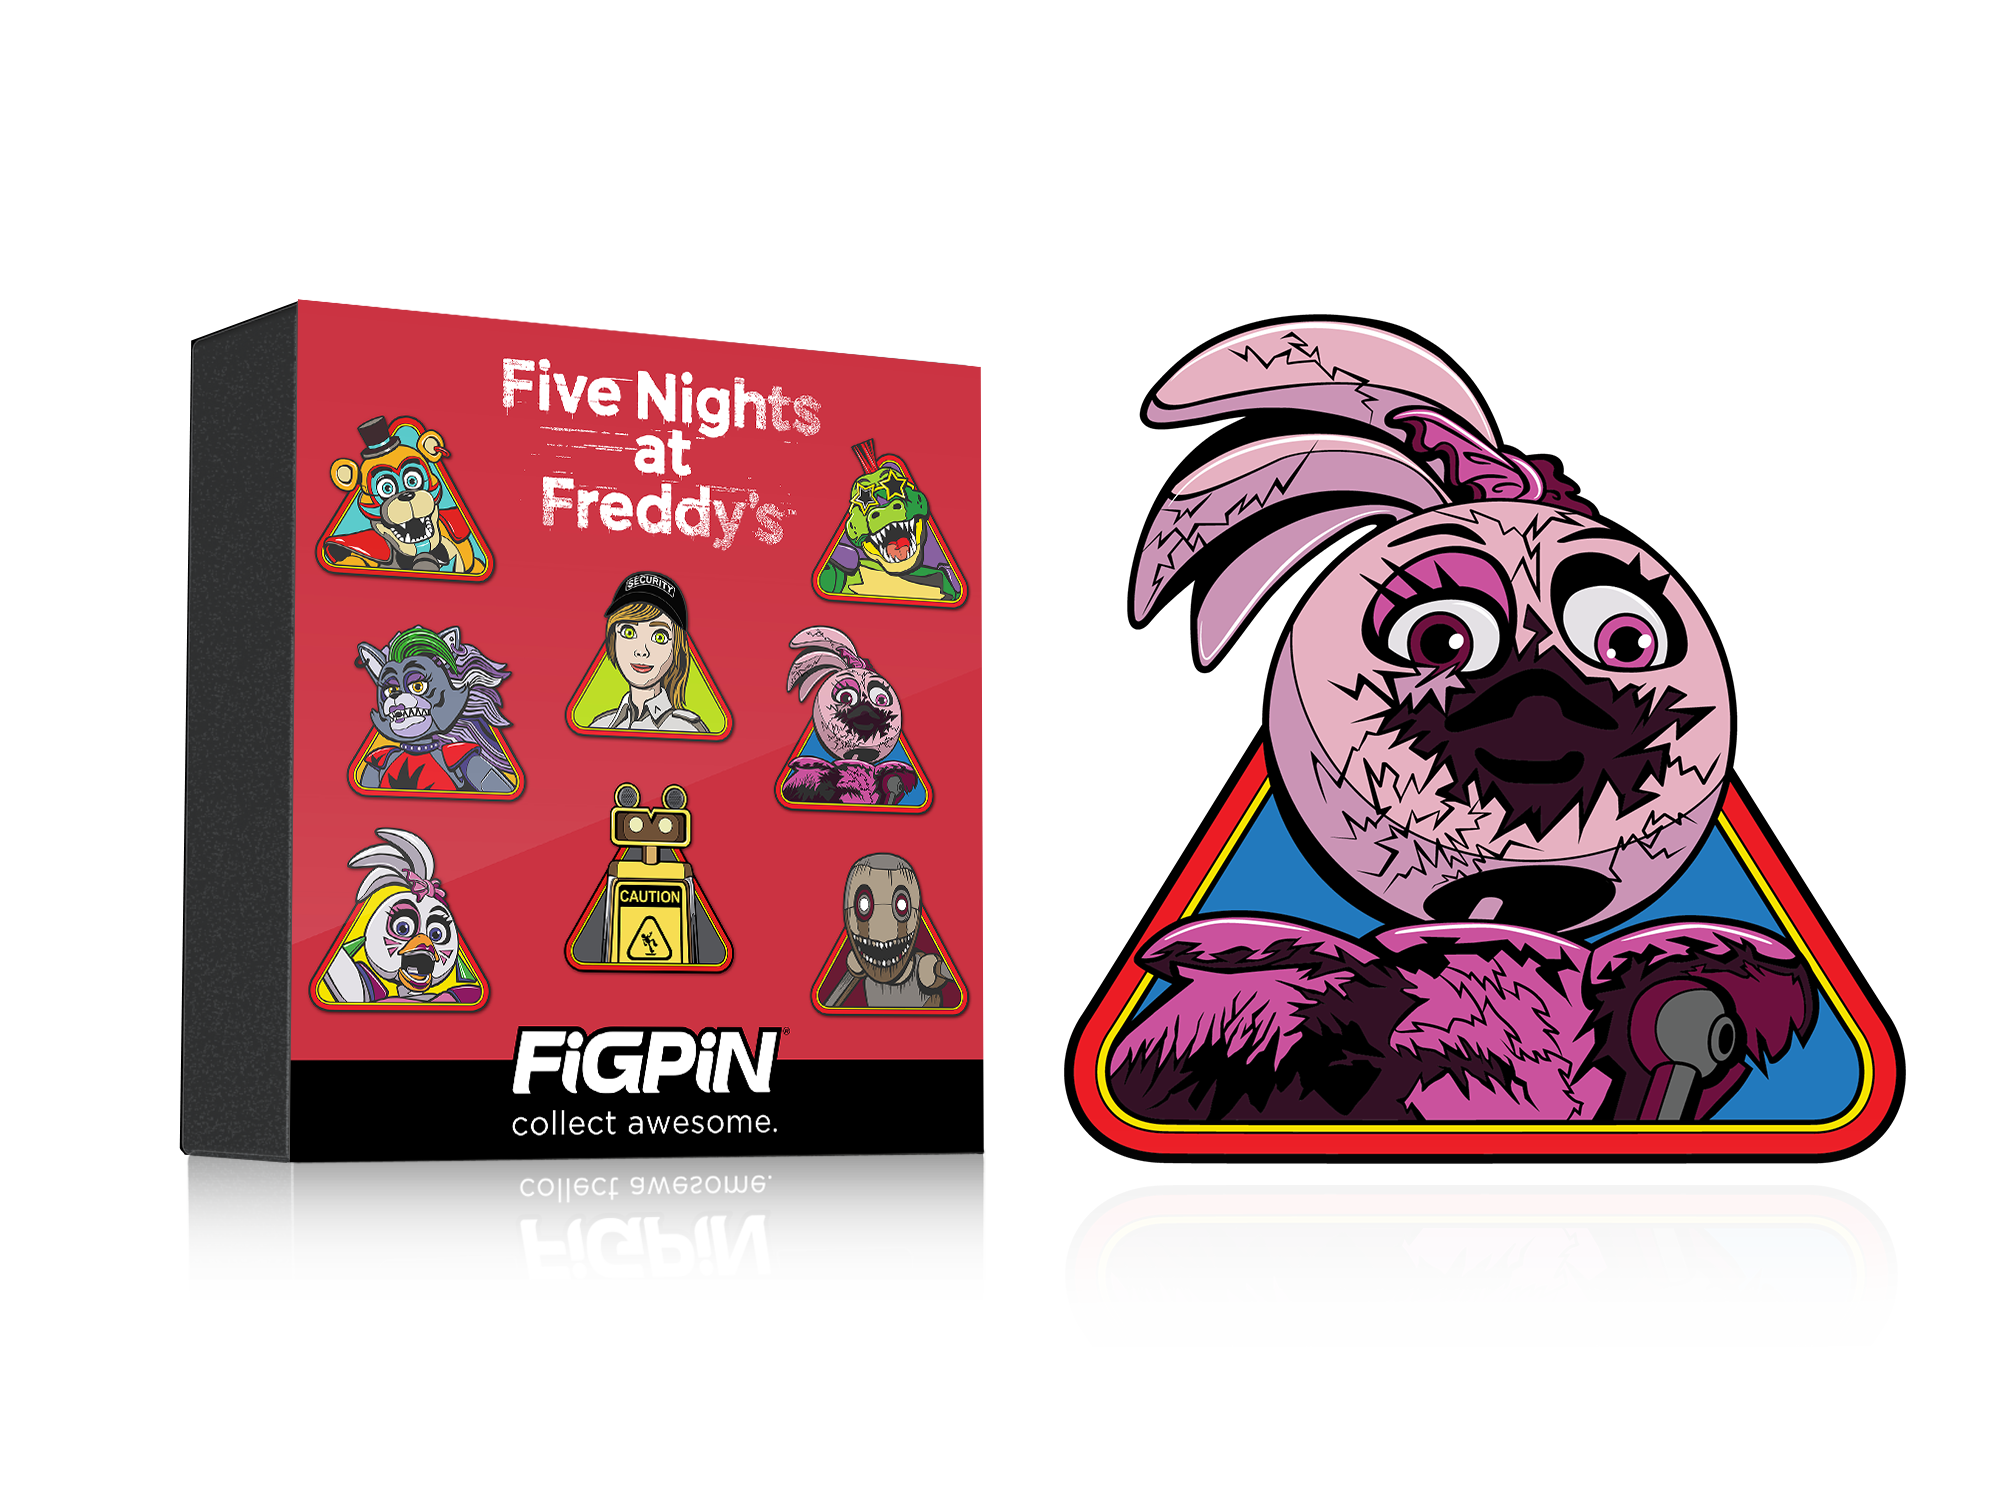 FNaF 3 - Five Nights At Freddys - Pin